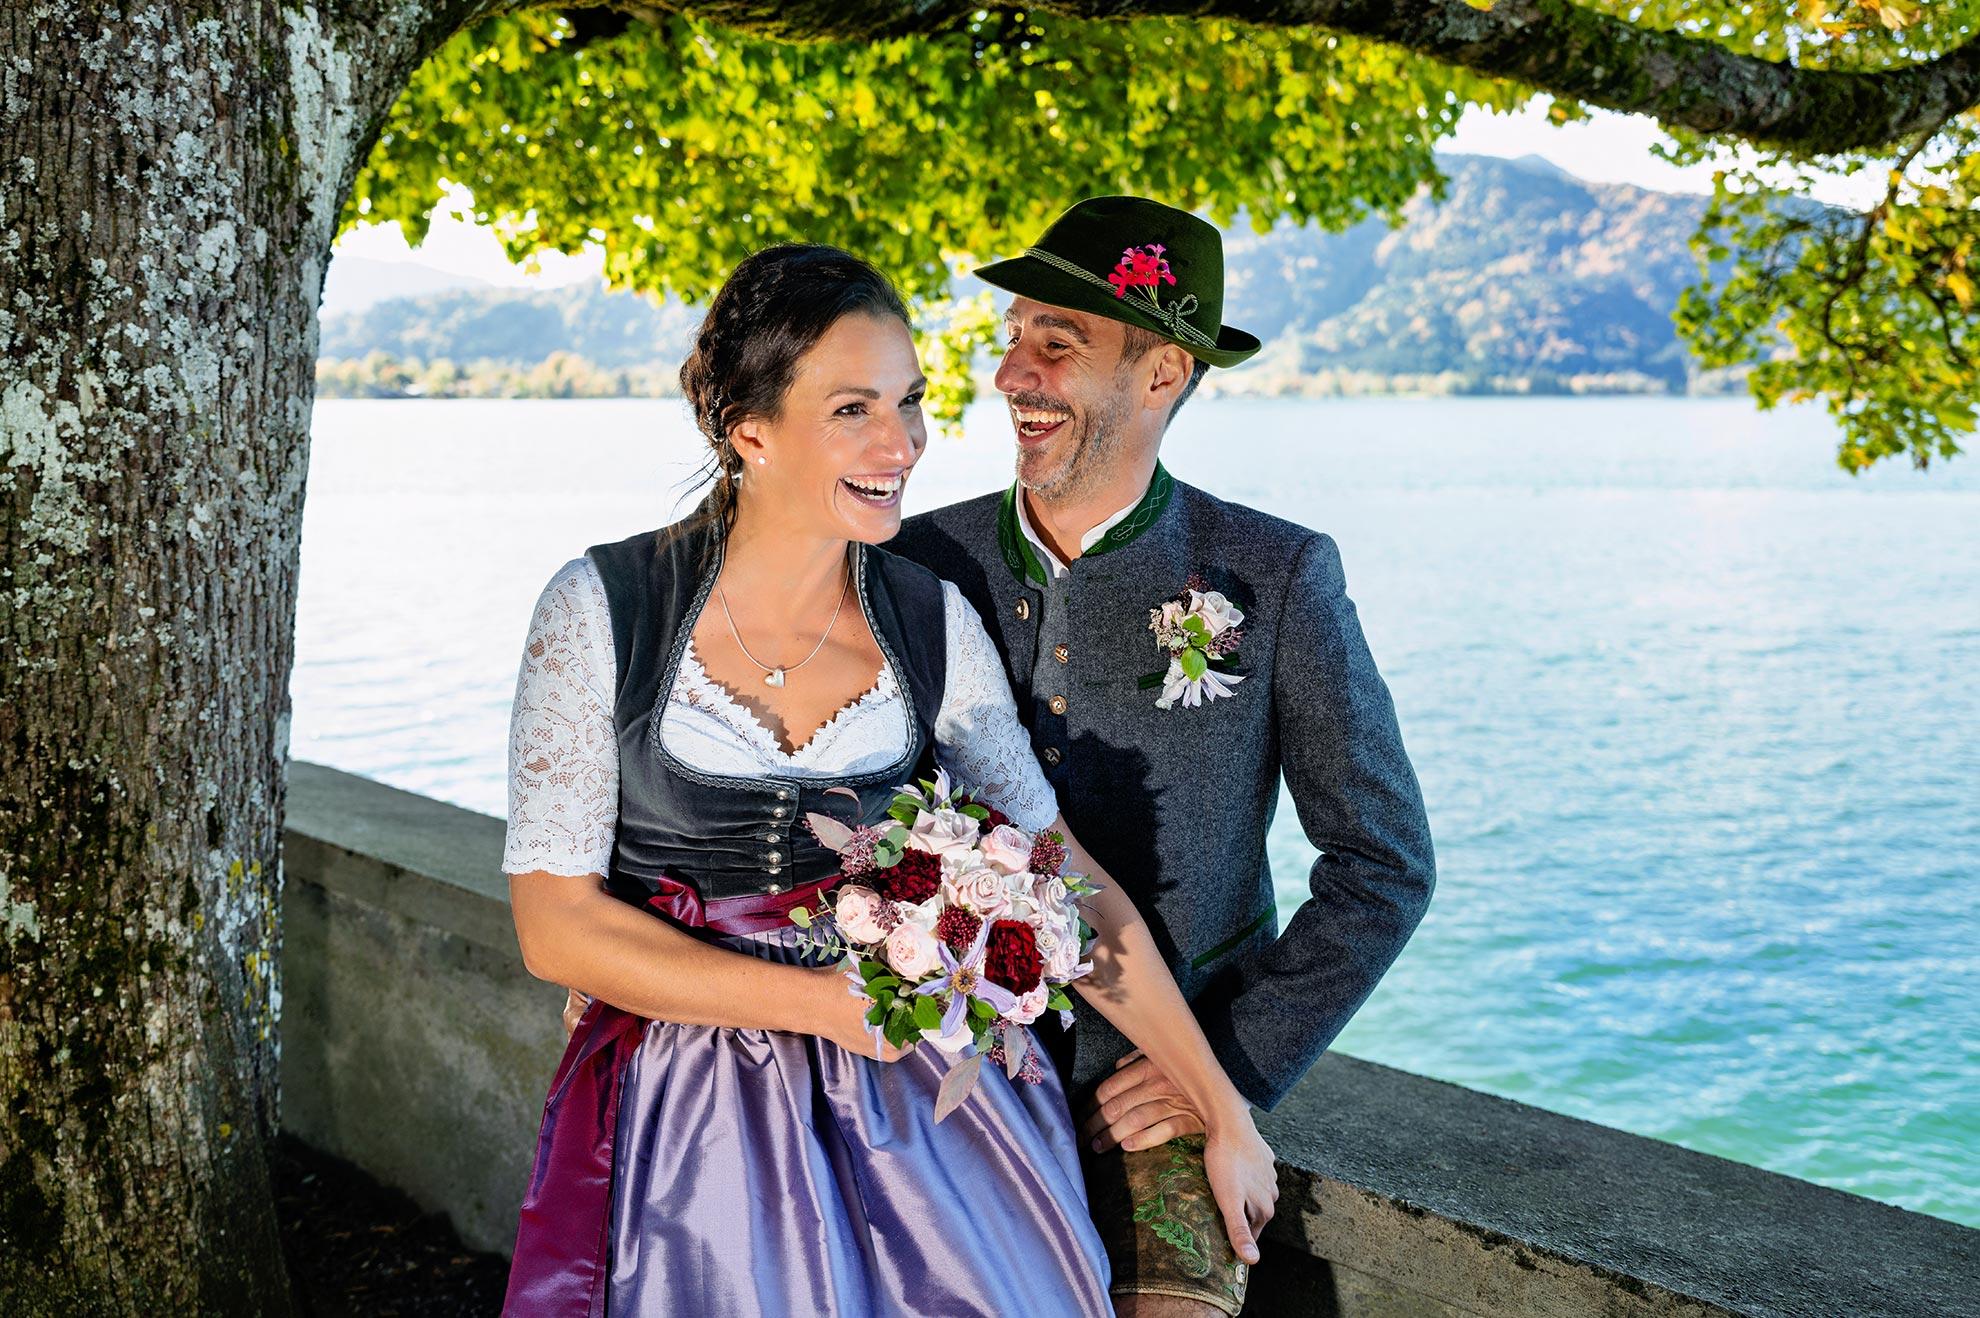 Hochzeitsfotograf Tegernsee Rolf Kaul - Brautpaar in Tracht unter einem Baum am Ufer des Tegernsee - Hochzeitsfoto